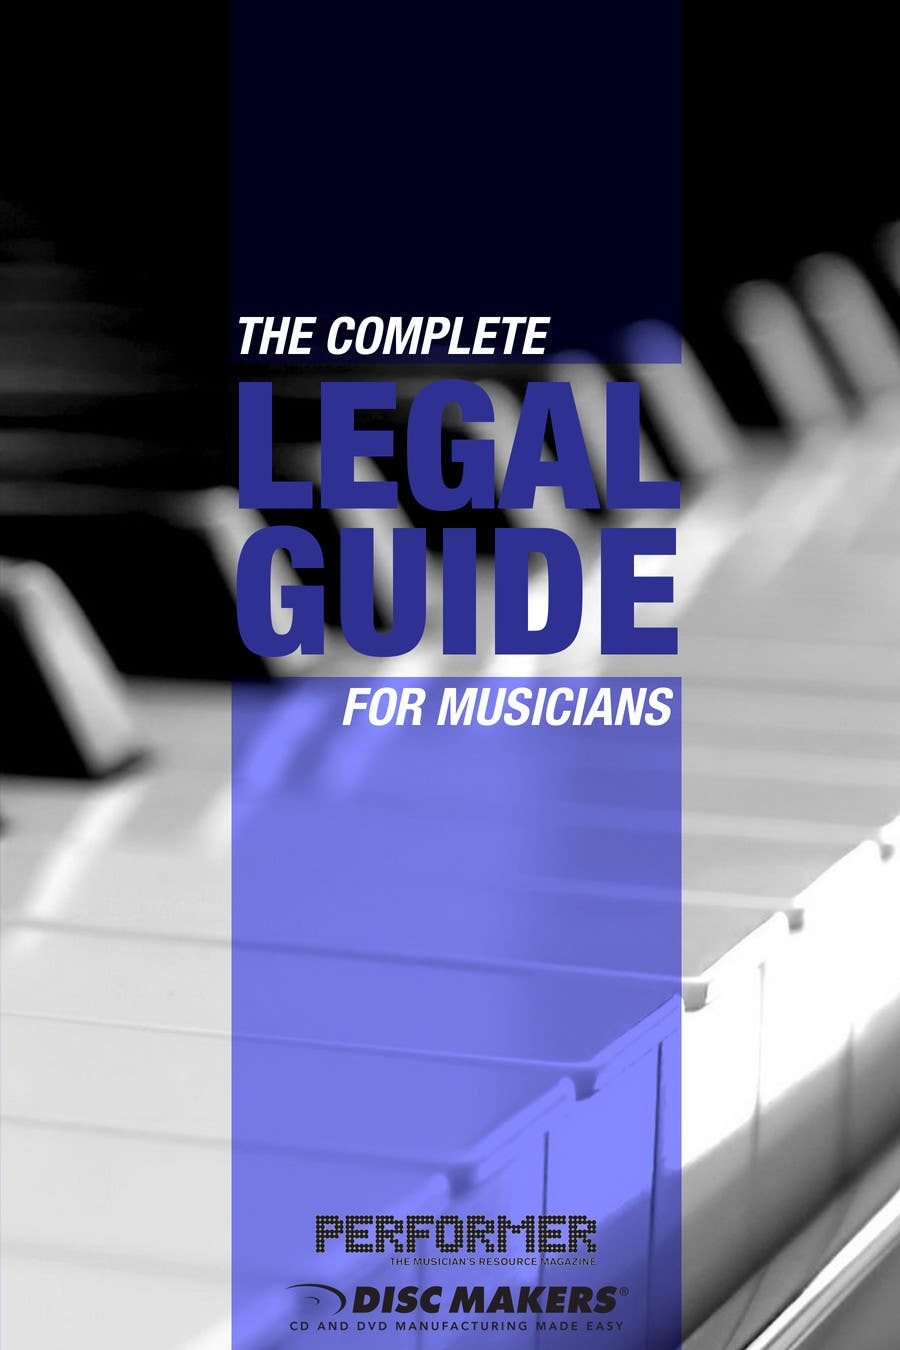 Kilpailutyö #8 kilpailussa                                                 Design a Cover for a Legal Guide for Musicians
                                            